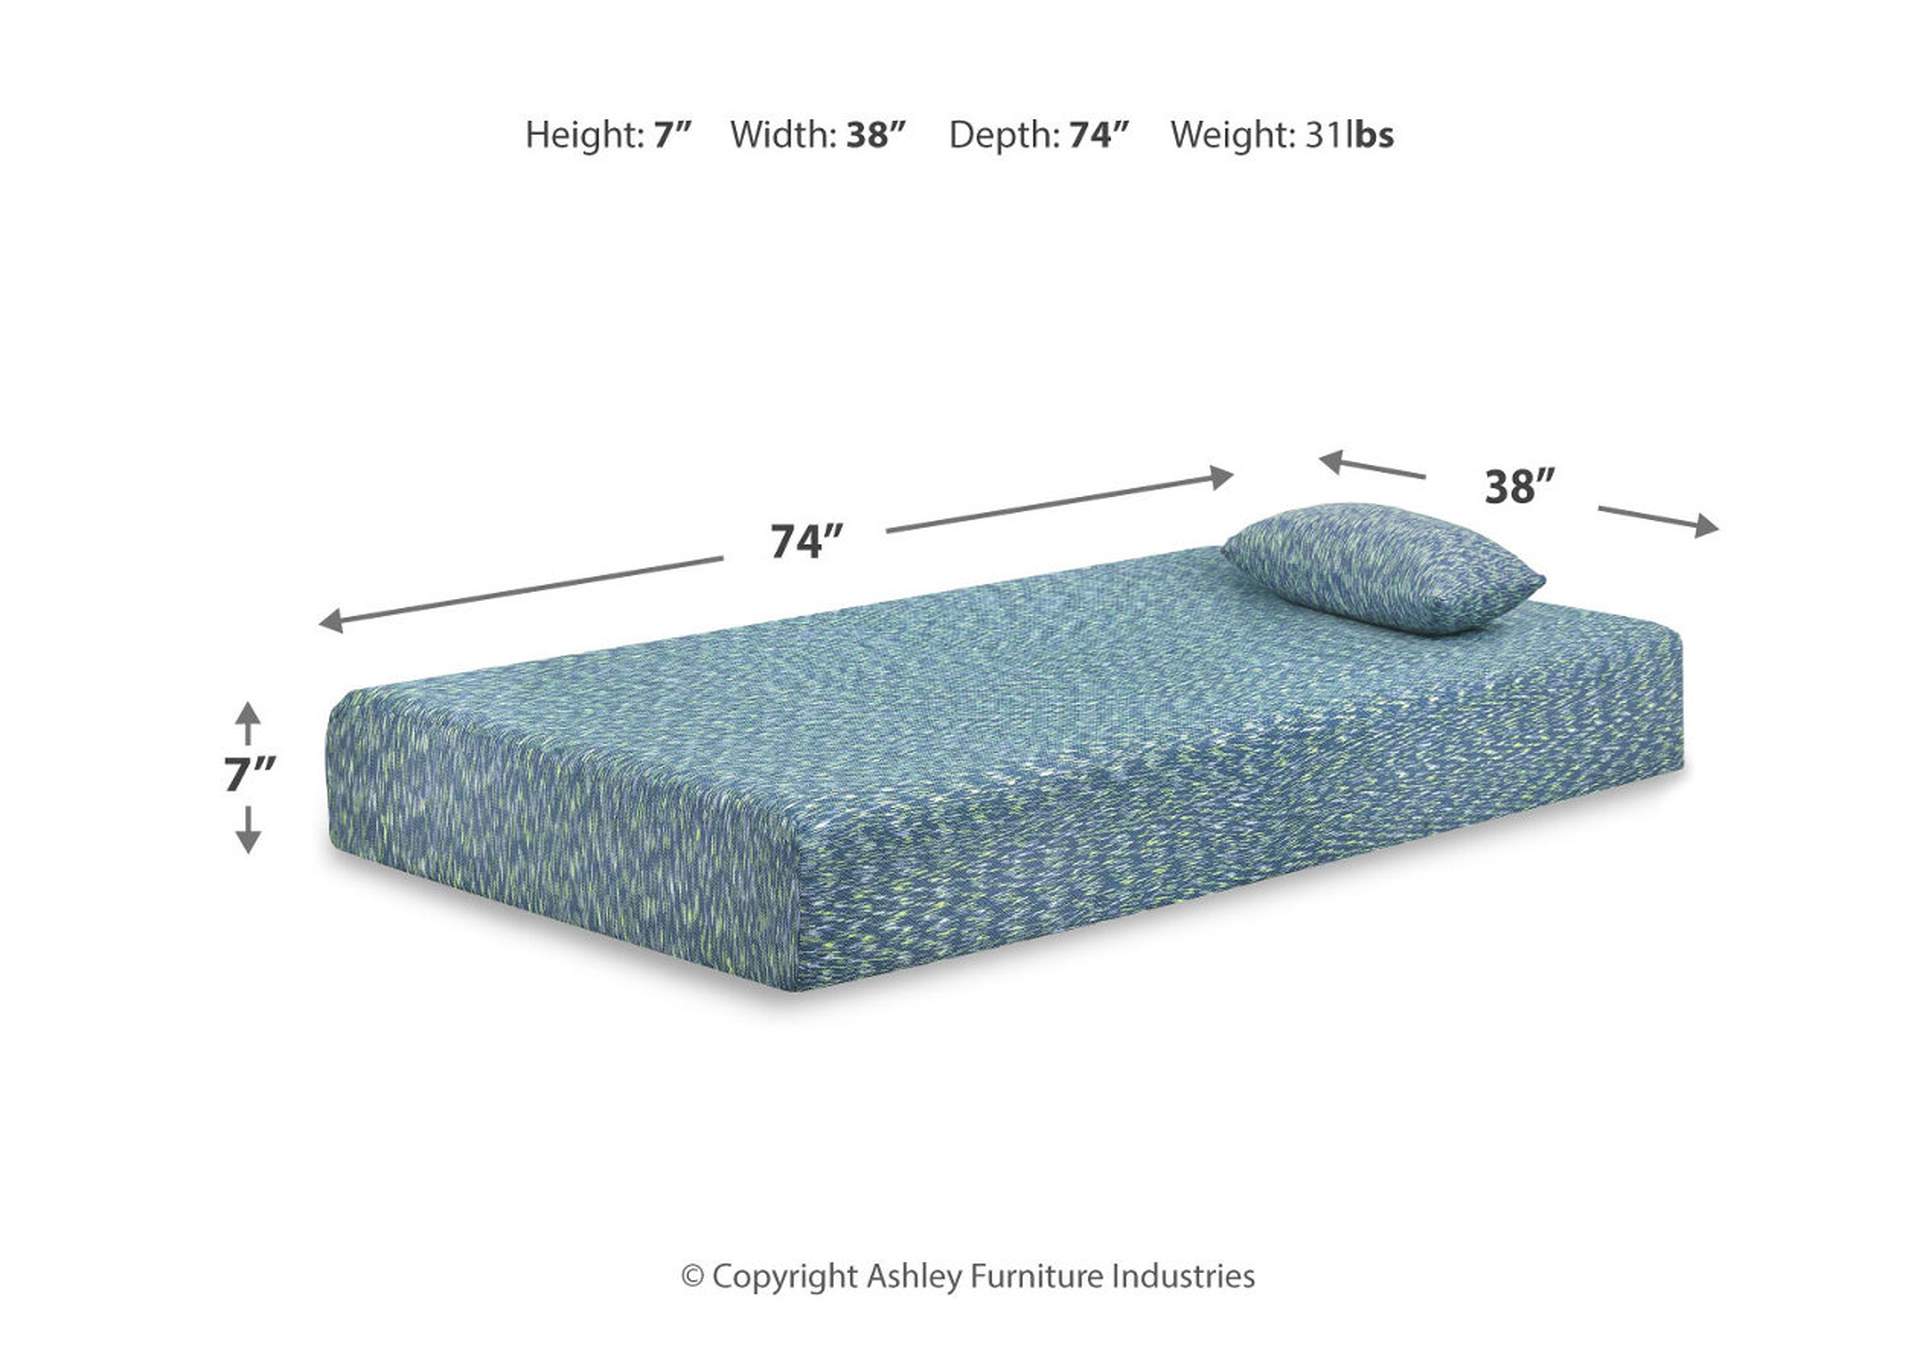 iKidz Blue Twin Mattress and Pillow,Sierra Sleep by Ashley